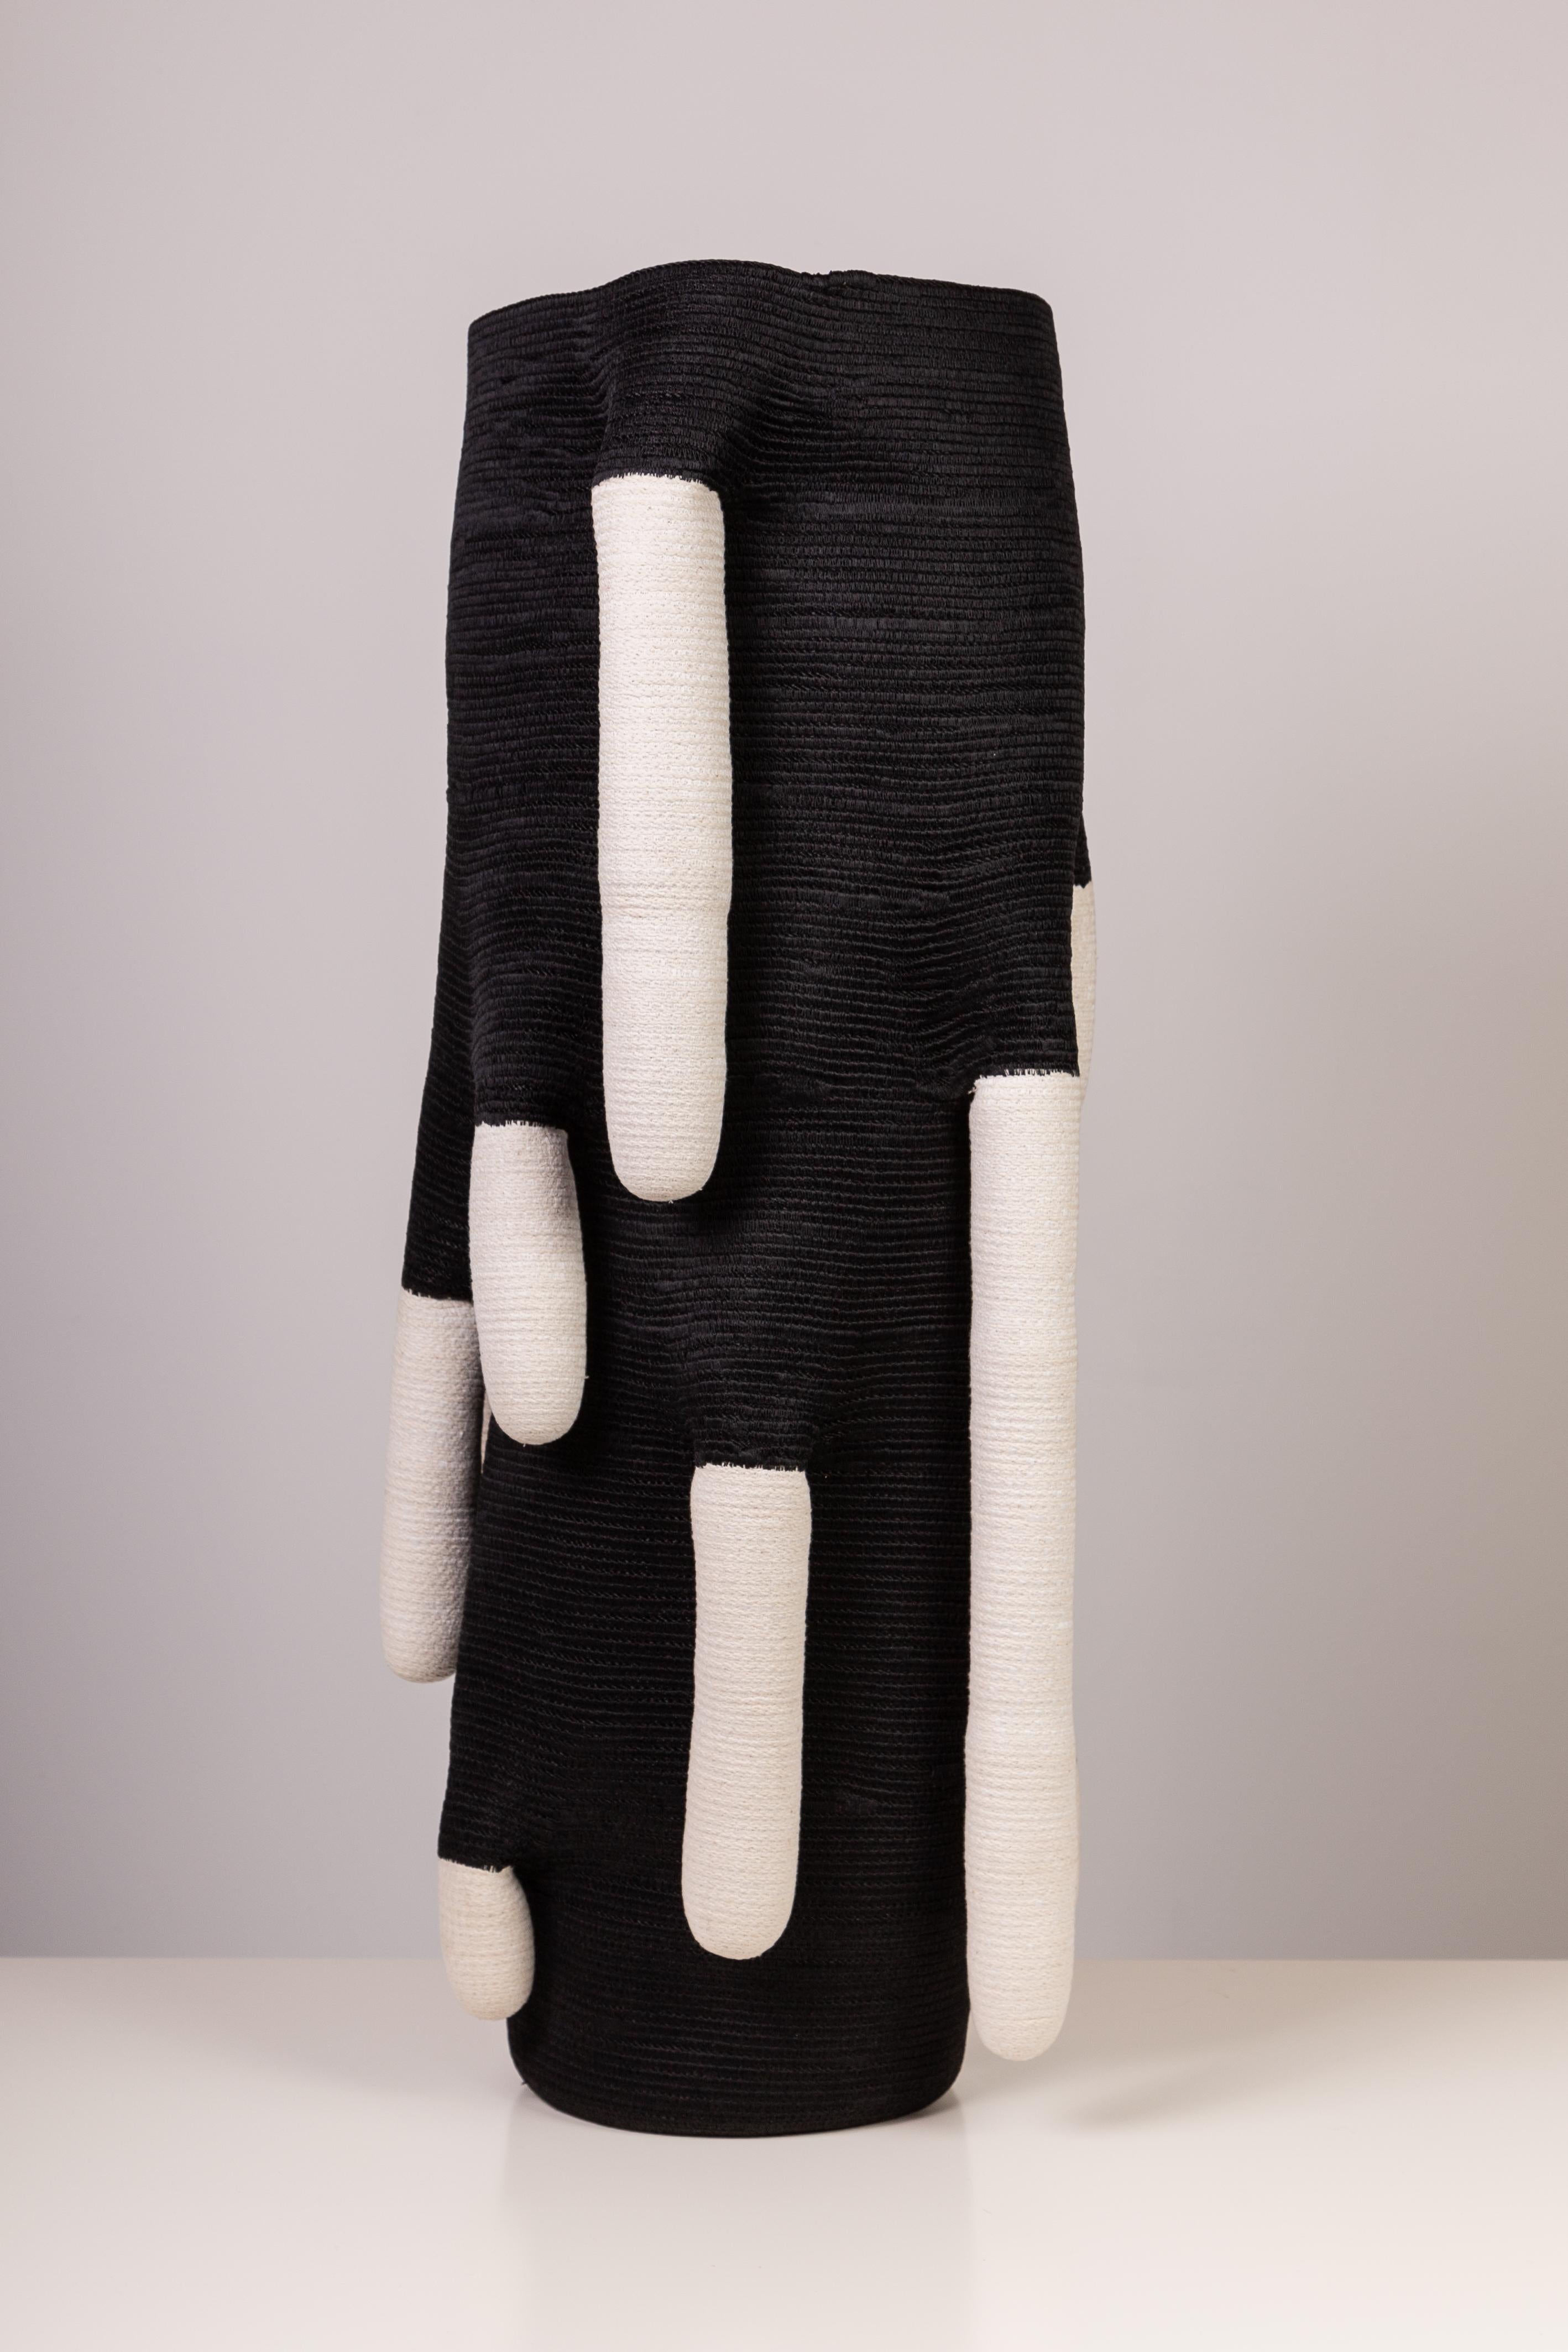 Coton Sculpture en fibre de coton enduite et cousue en goutte d'eau de Doug Johnston, 2015